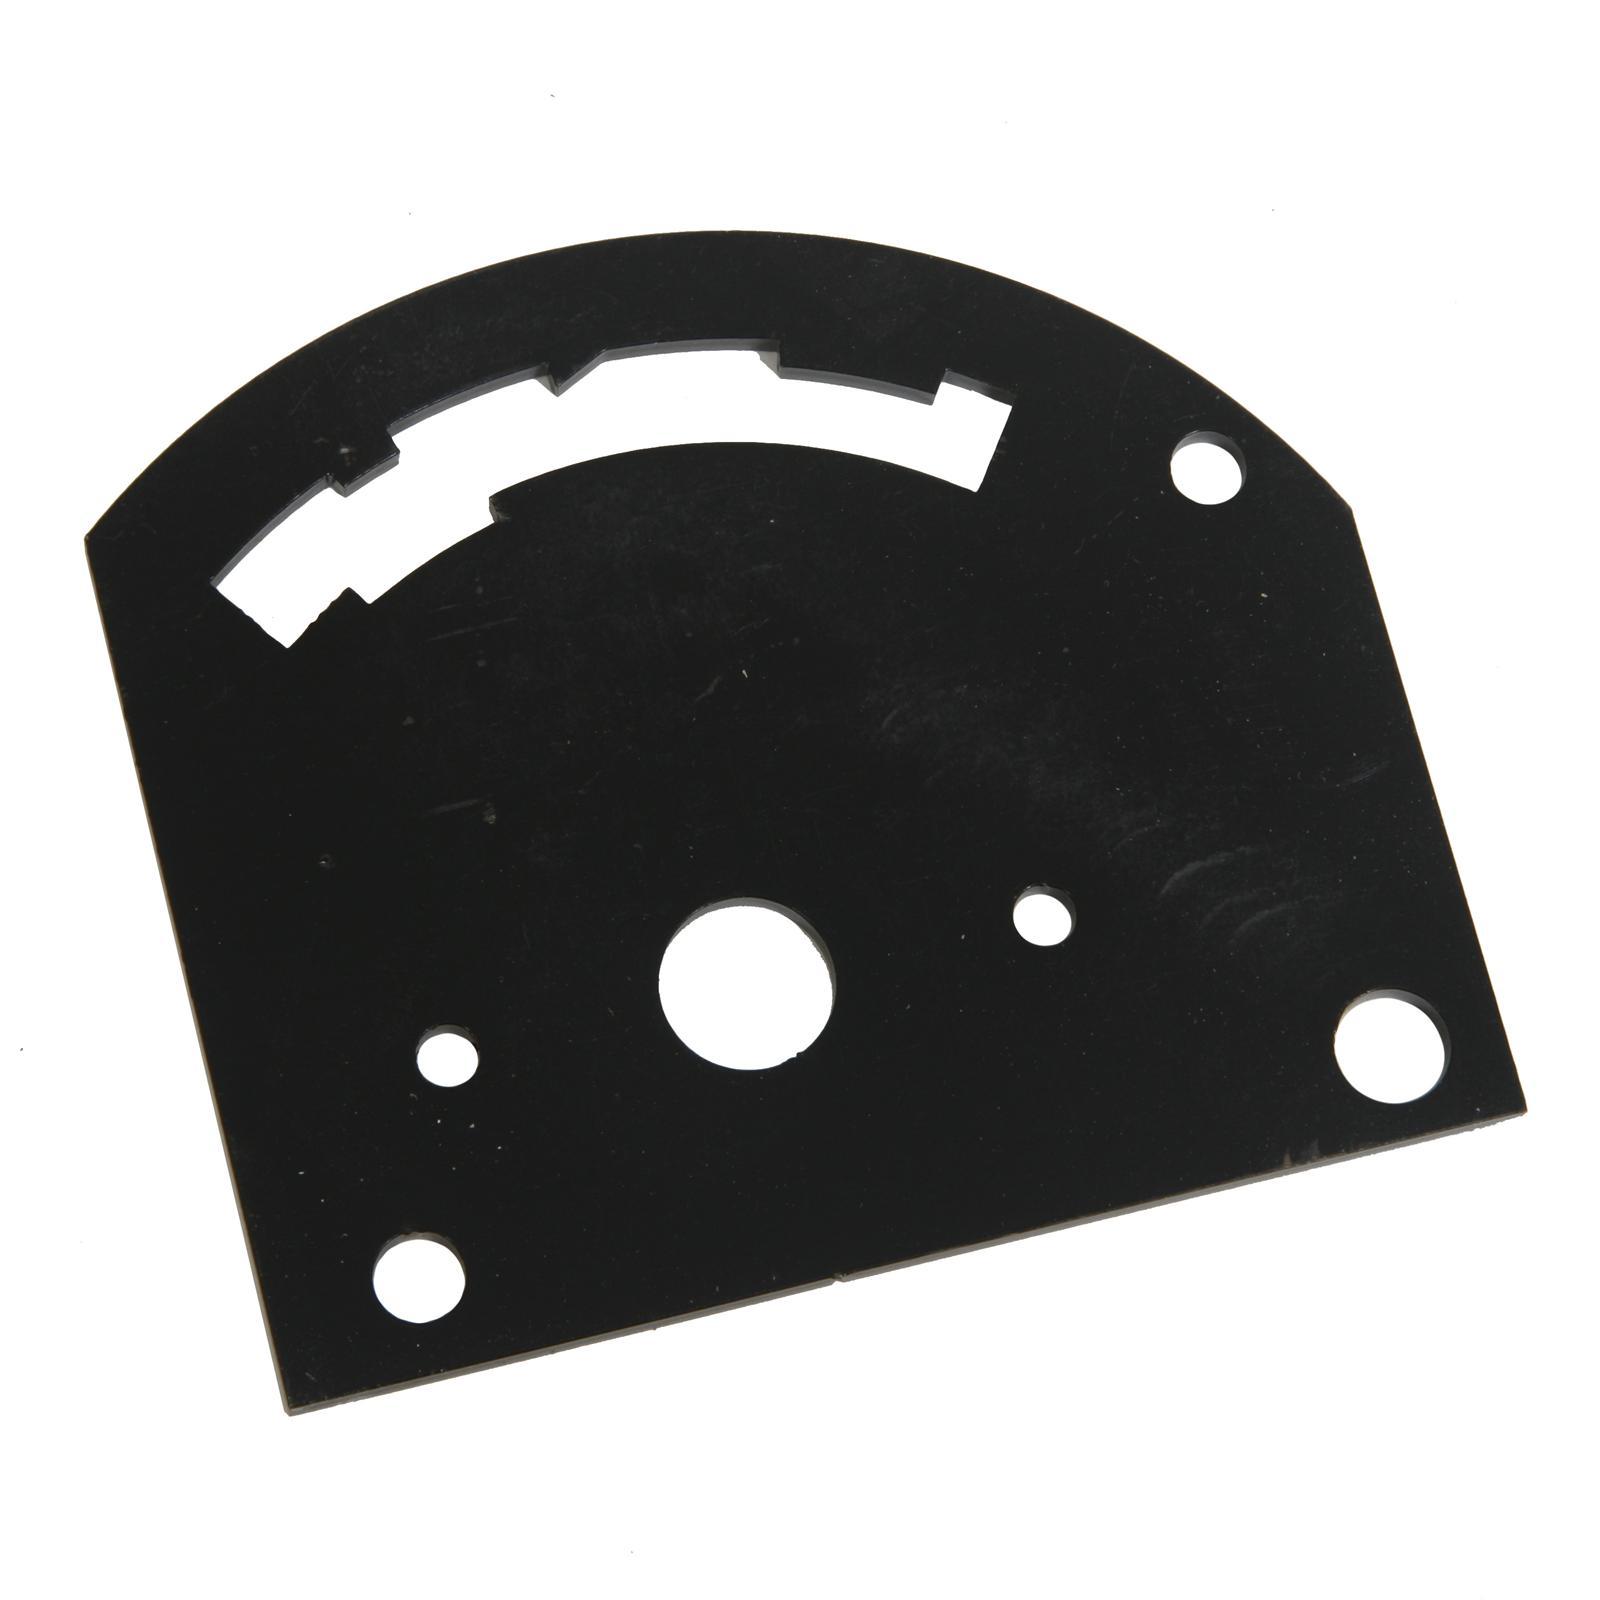 4-Speed Reverse Pattern Gate Plate Black Steel